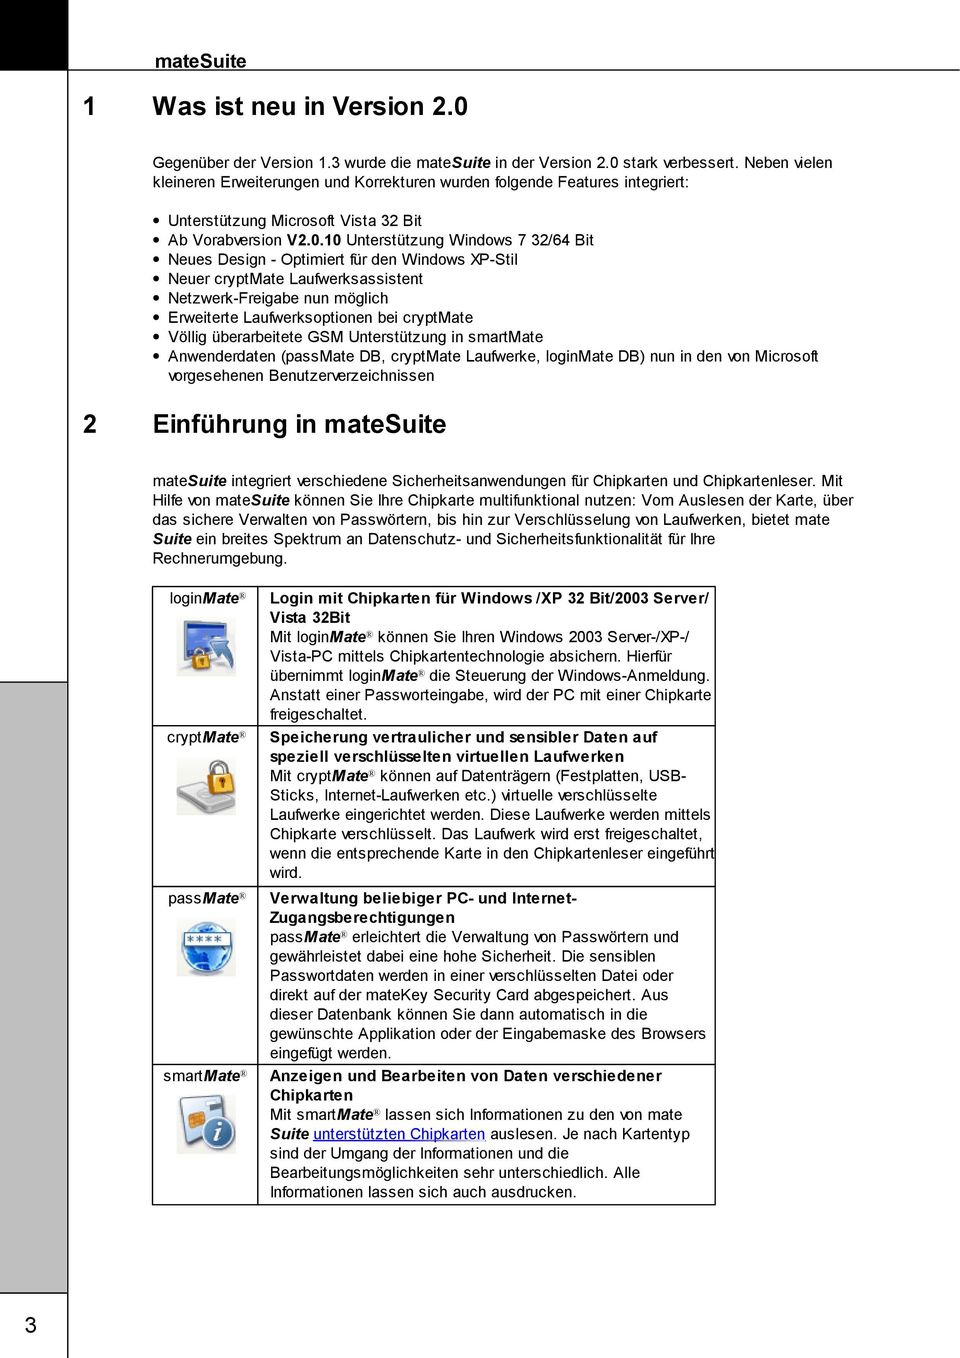 10 Unterstützung Windows 7 32/64 Bit Neues Design - Optimiert für den Windows XP-Stil Neuer cryptmate Laufwerksassistent Netzwerk-Freigabe nun möglich Erweiterte Laufwerksoptionen bei cryptmate